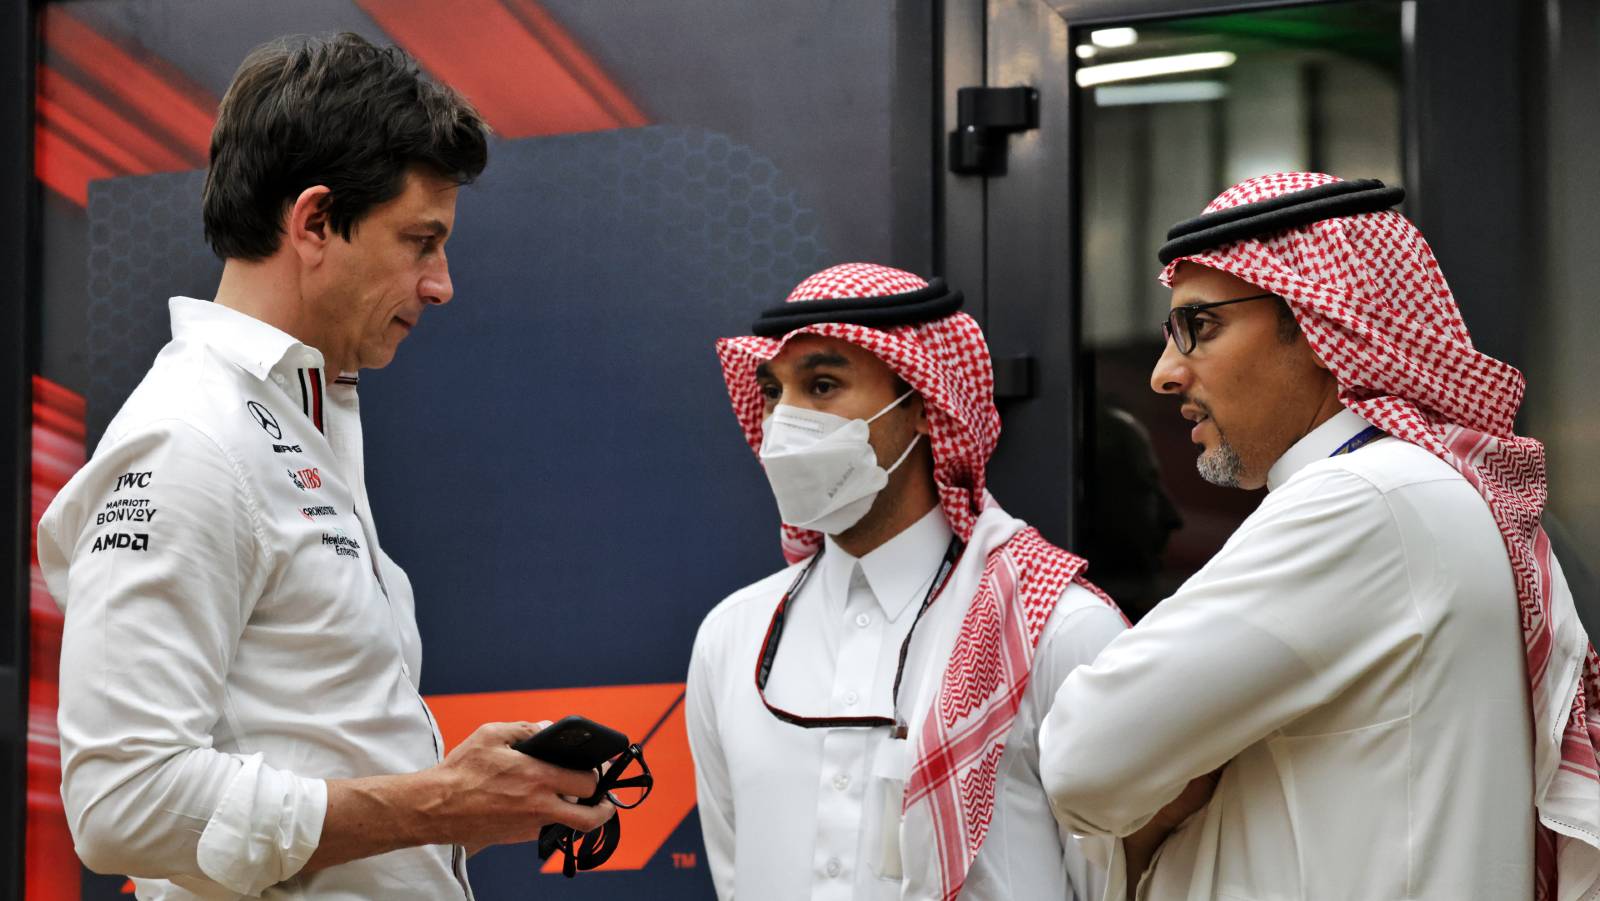 Toto Wolff talks to Saudi Arabian GP officials. Jeddah March 2022.